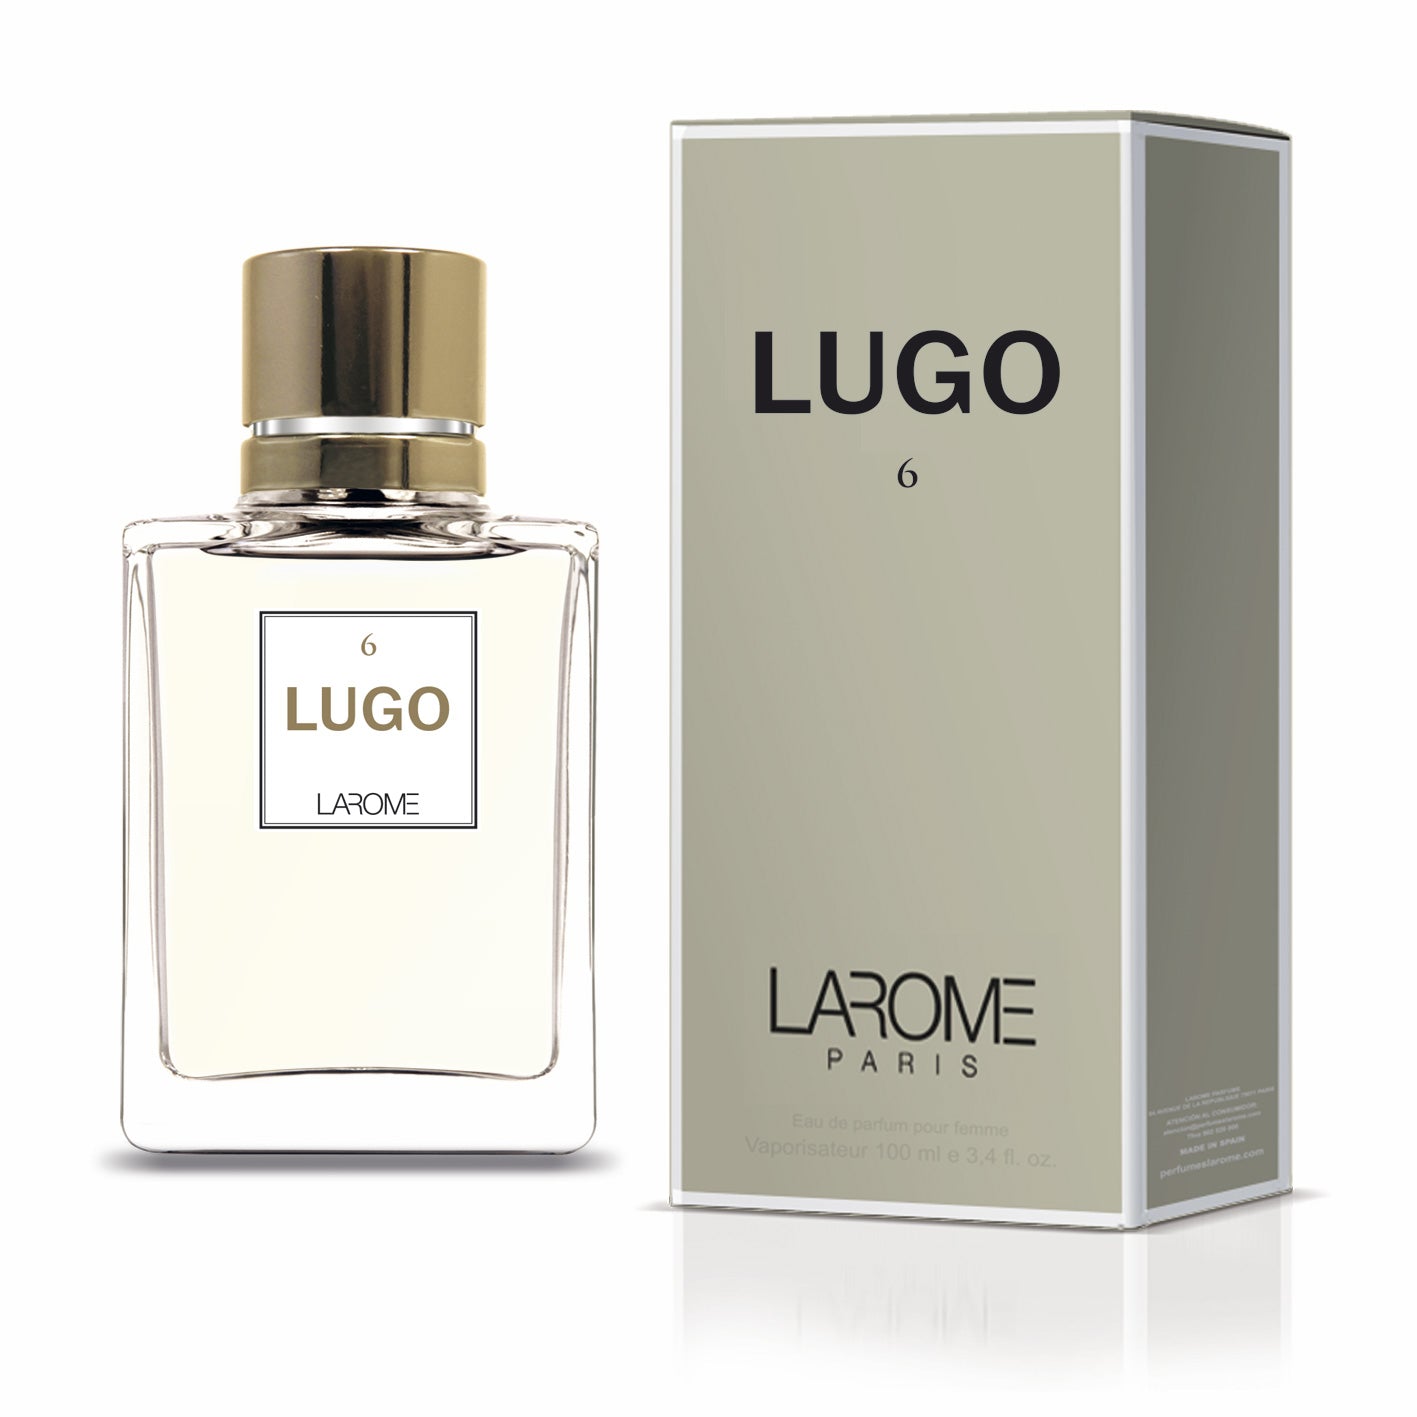 LUGO 6F by Larome geïnspireerd door Hugo Woman